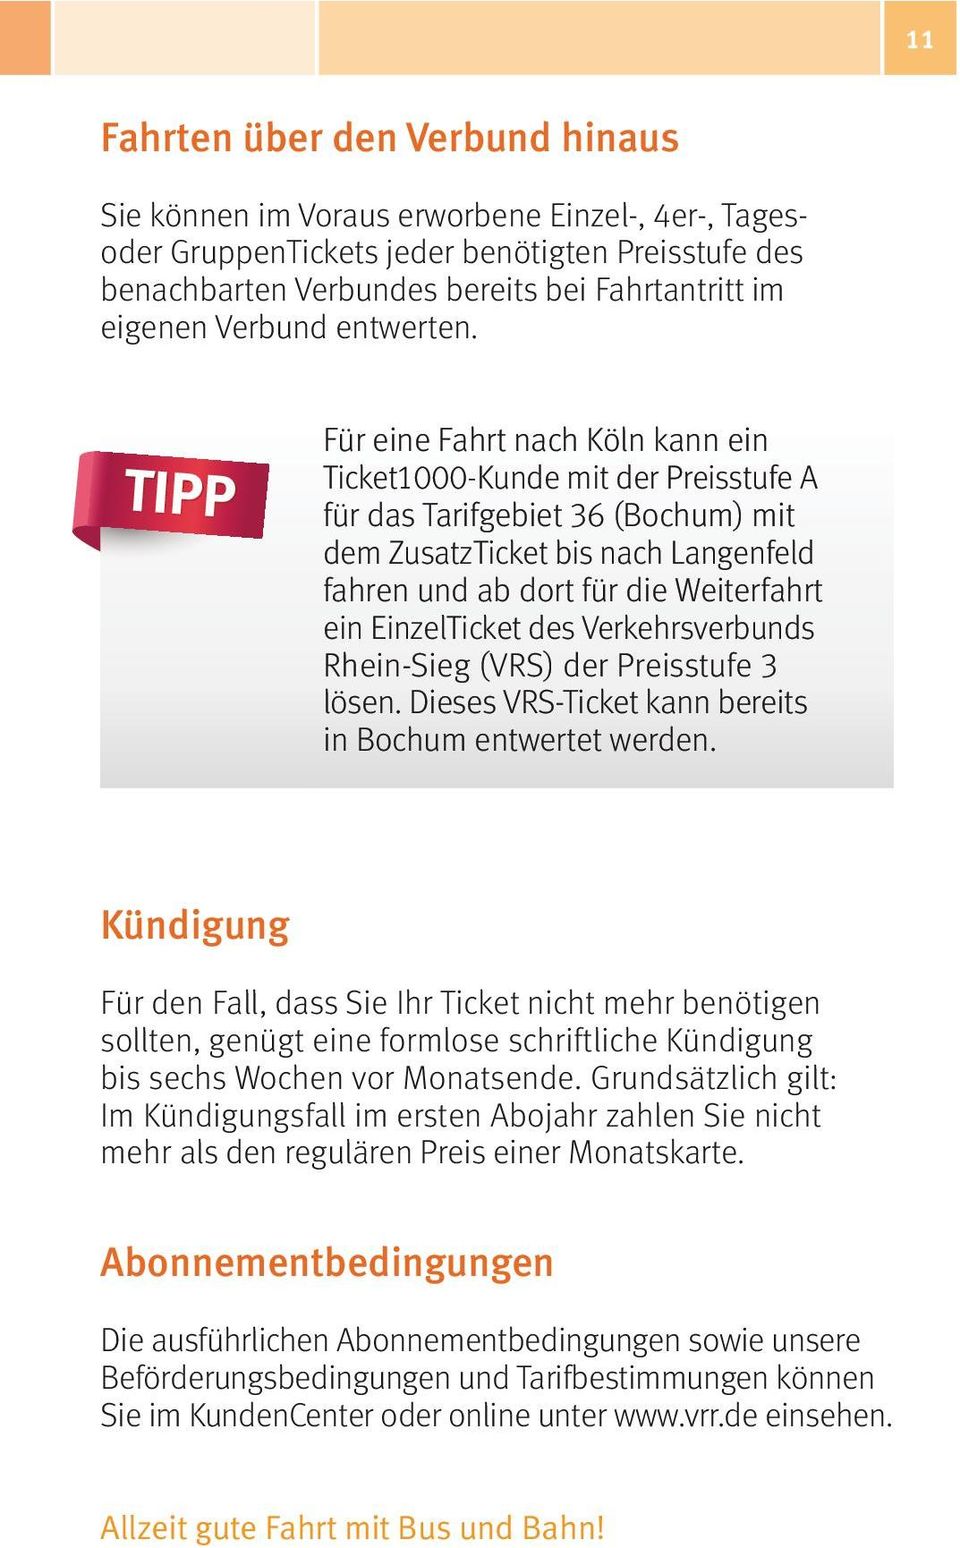 Für eine Fahrt nach Köln kann ein Ticket1000-Kunde mit der Preisstufe A für das Tarifgebiet 36 (Bochum) mit dem ZusatzTicket bis nach Langenfeld fahren und ab dort für die Weiterfahrt ein